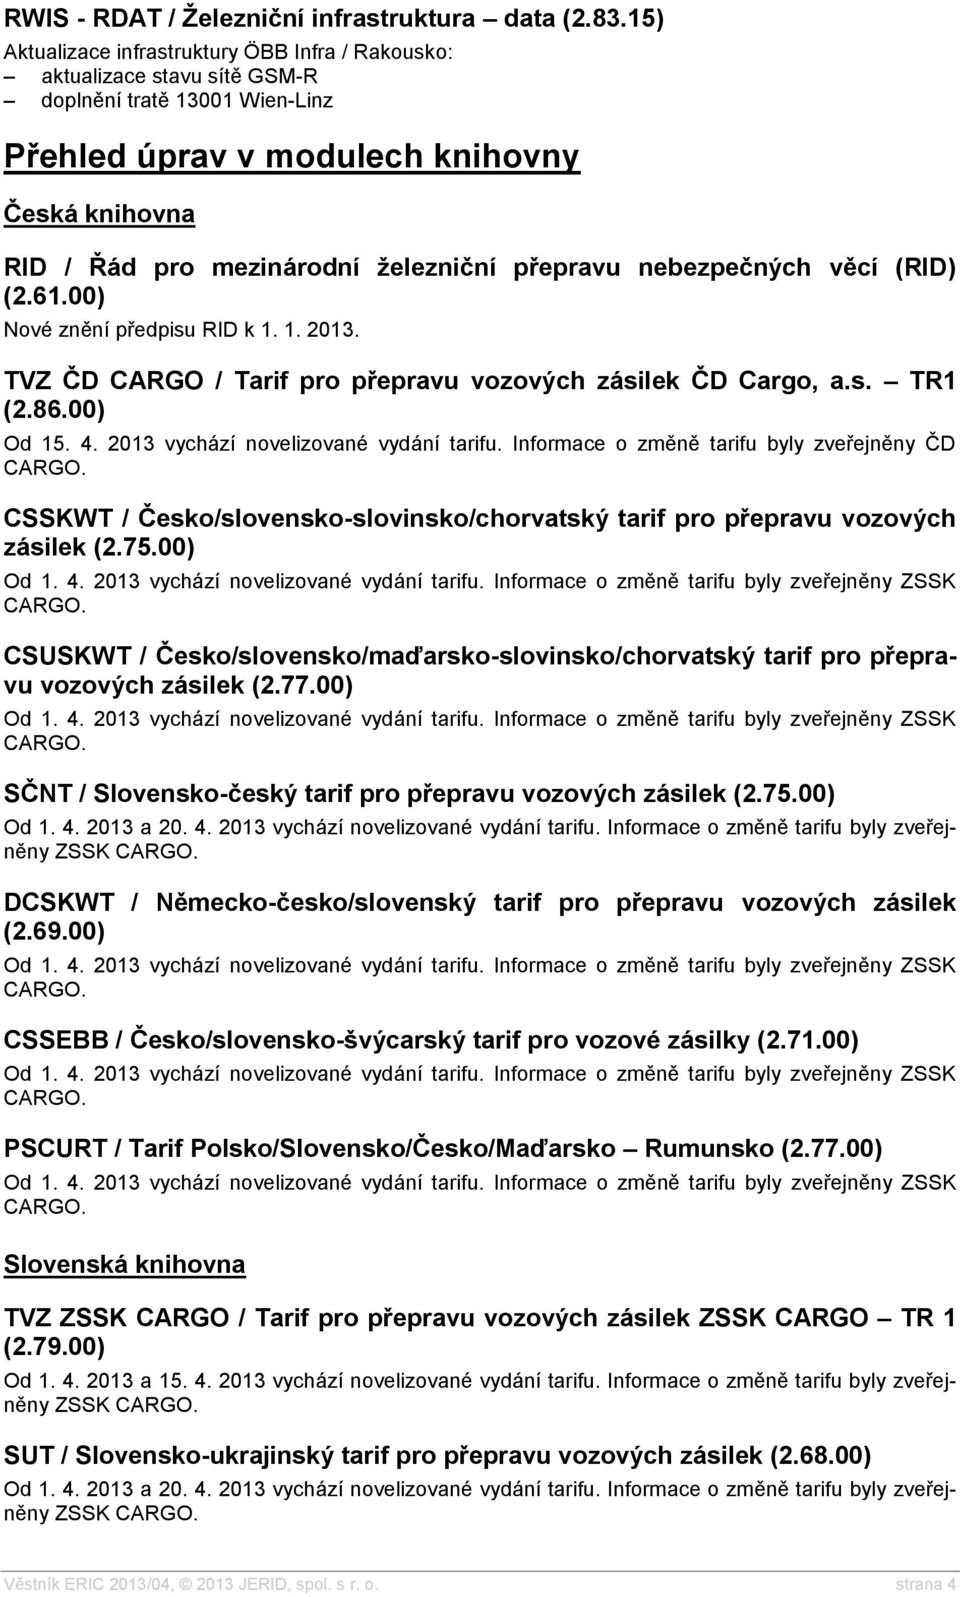 přepravu nebezpečných věcí (RID) (2.61.00) Nové znění předpisu RID k 1. 1. 2013. TVZ ČD CARGO / Tarif pro přepravu vozových zásilek ČD Cargo, a.s. TR1 (2.86.00) Od 15. 4.